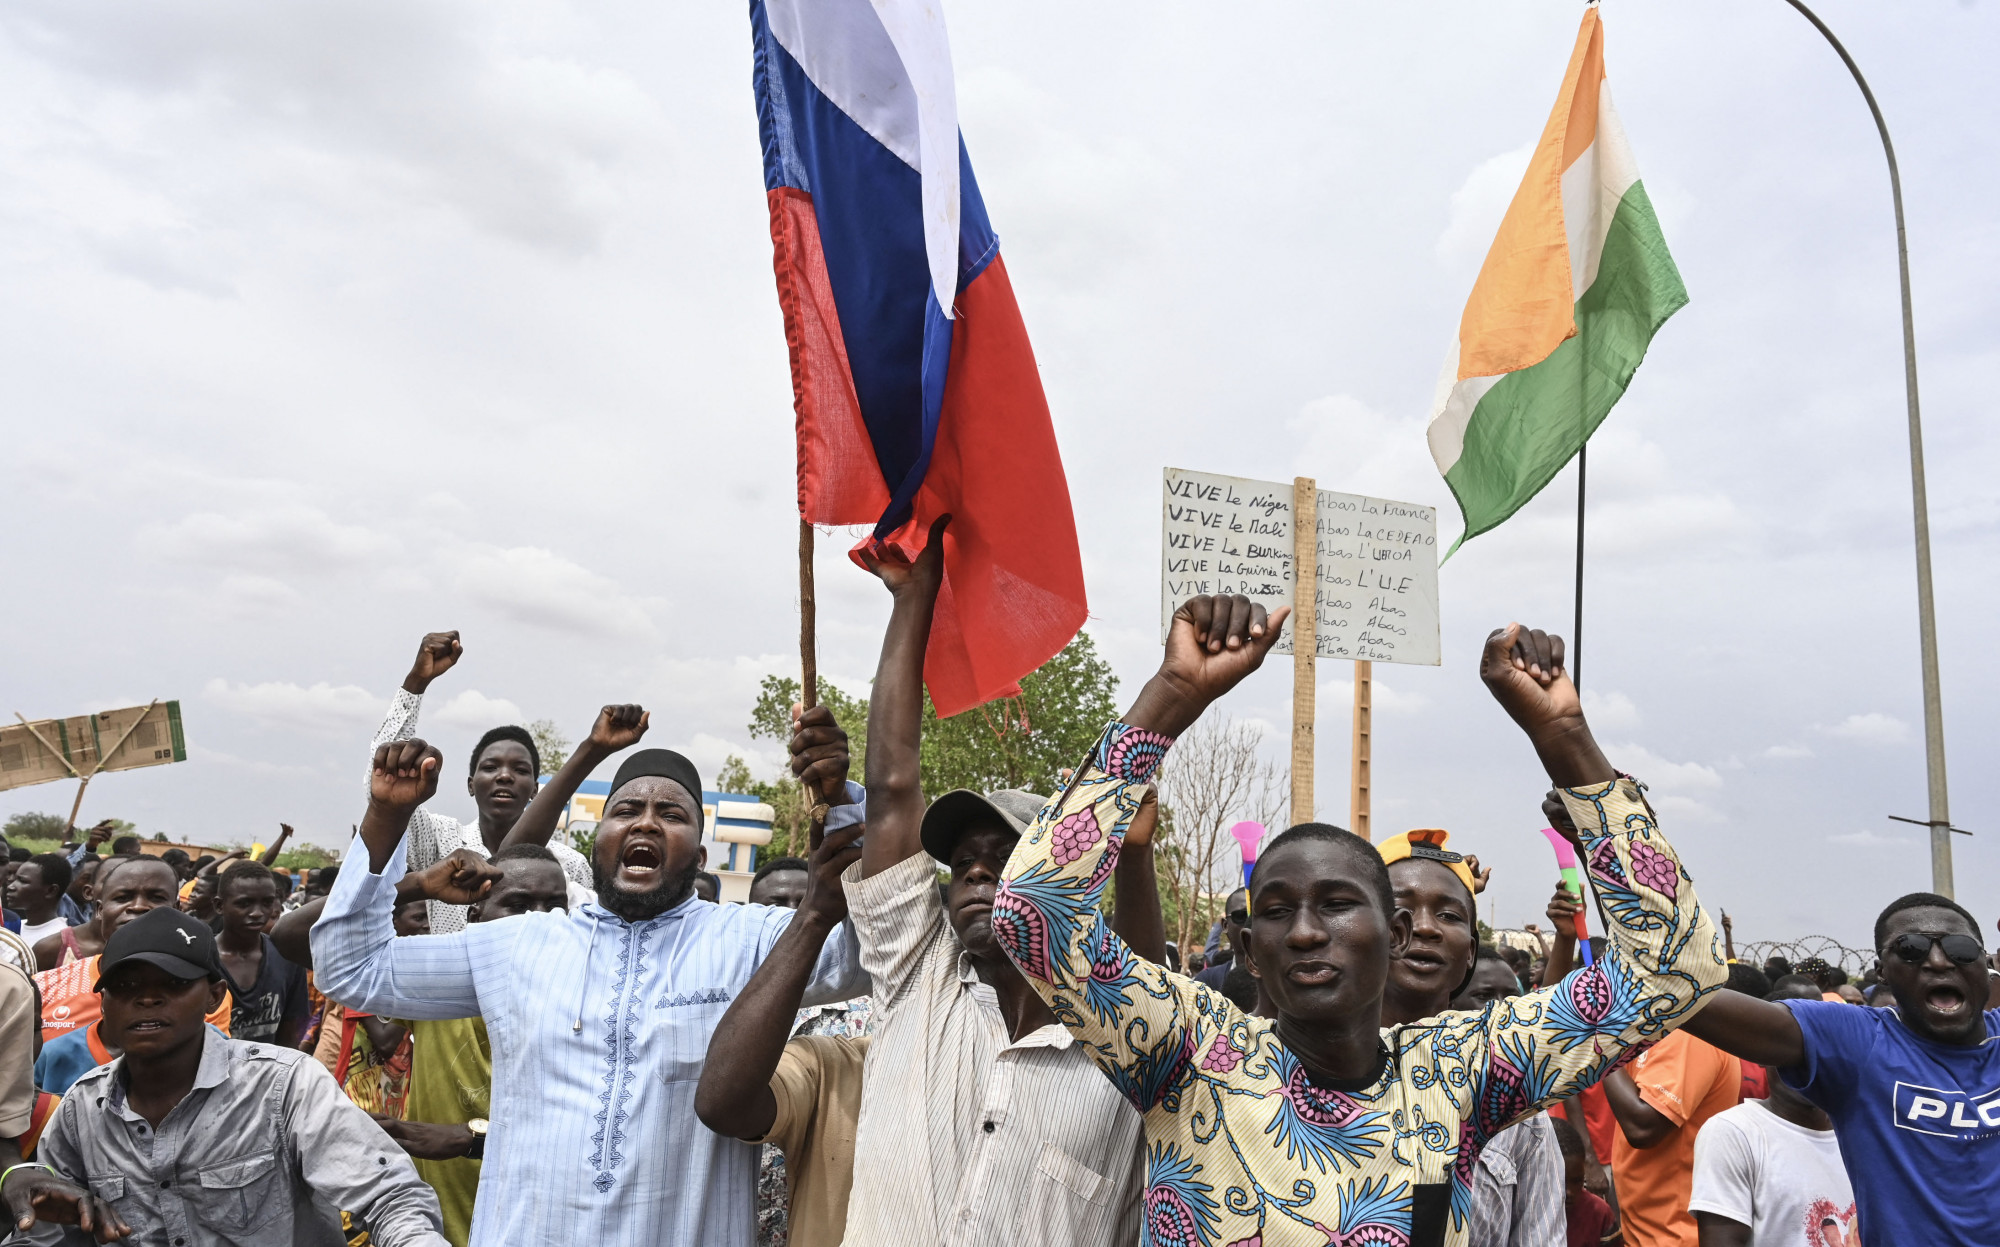 Oroszország „elhúzódó konfrontációval” fenyegeti a nyugat-afrikai országokat, ha megpróbálnának beavatkozni Nigerben